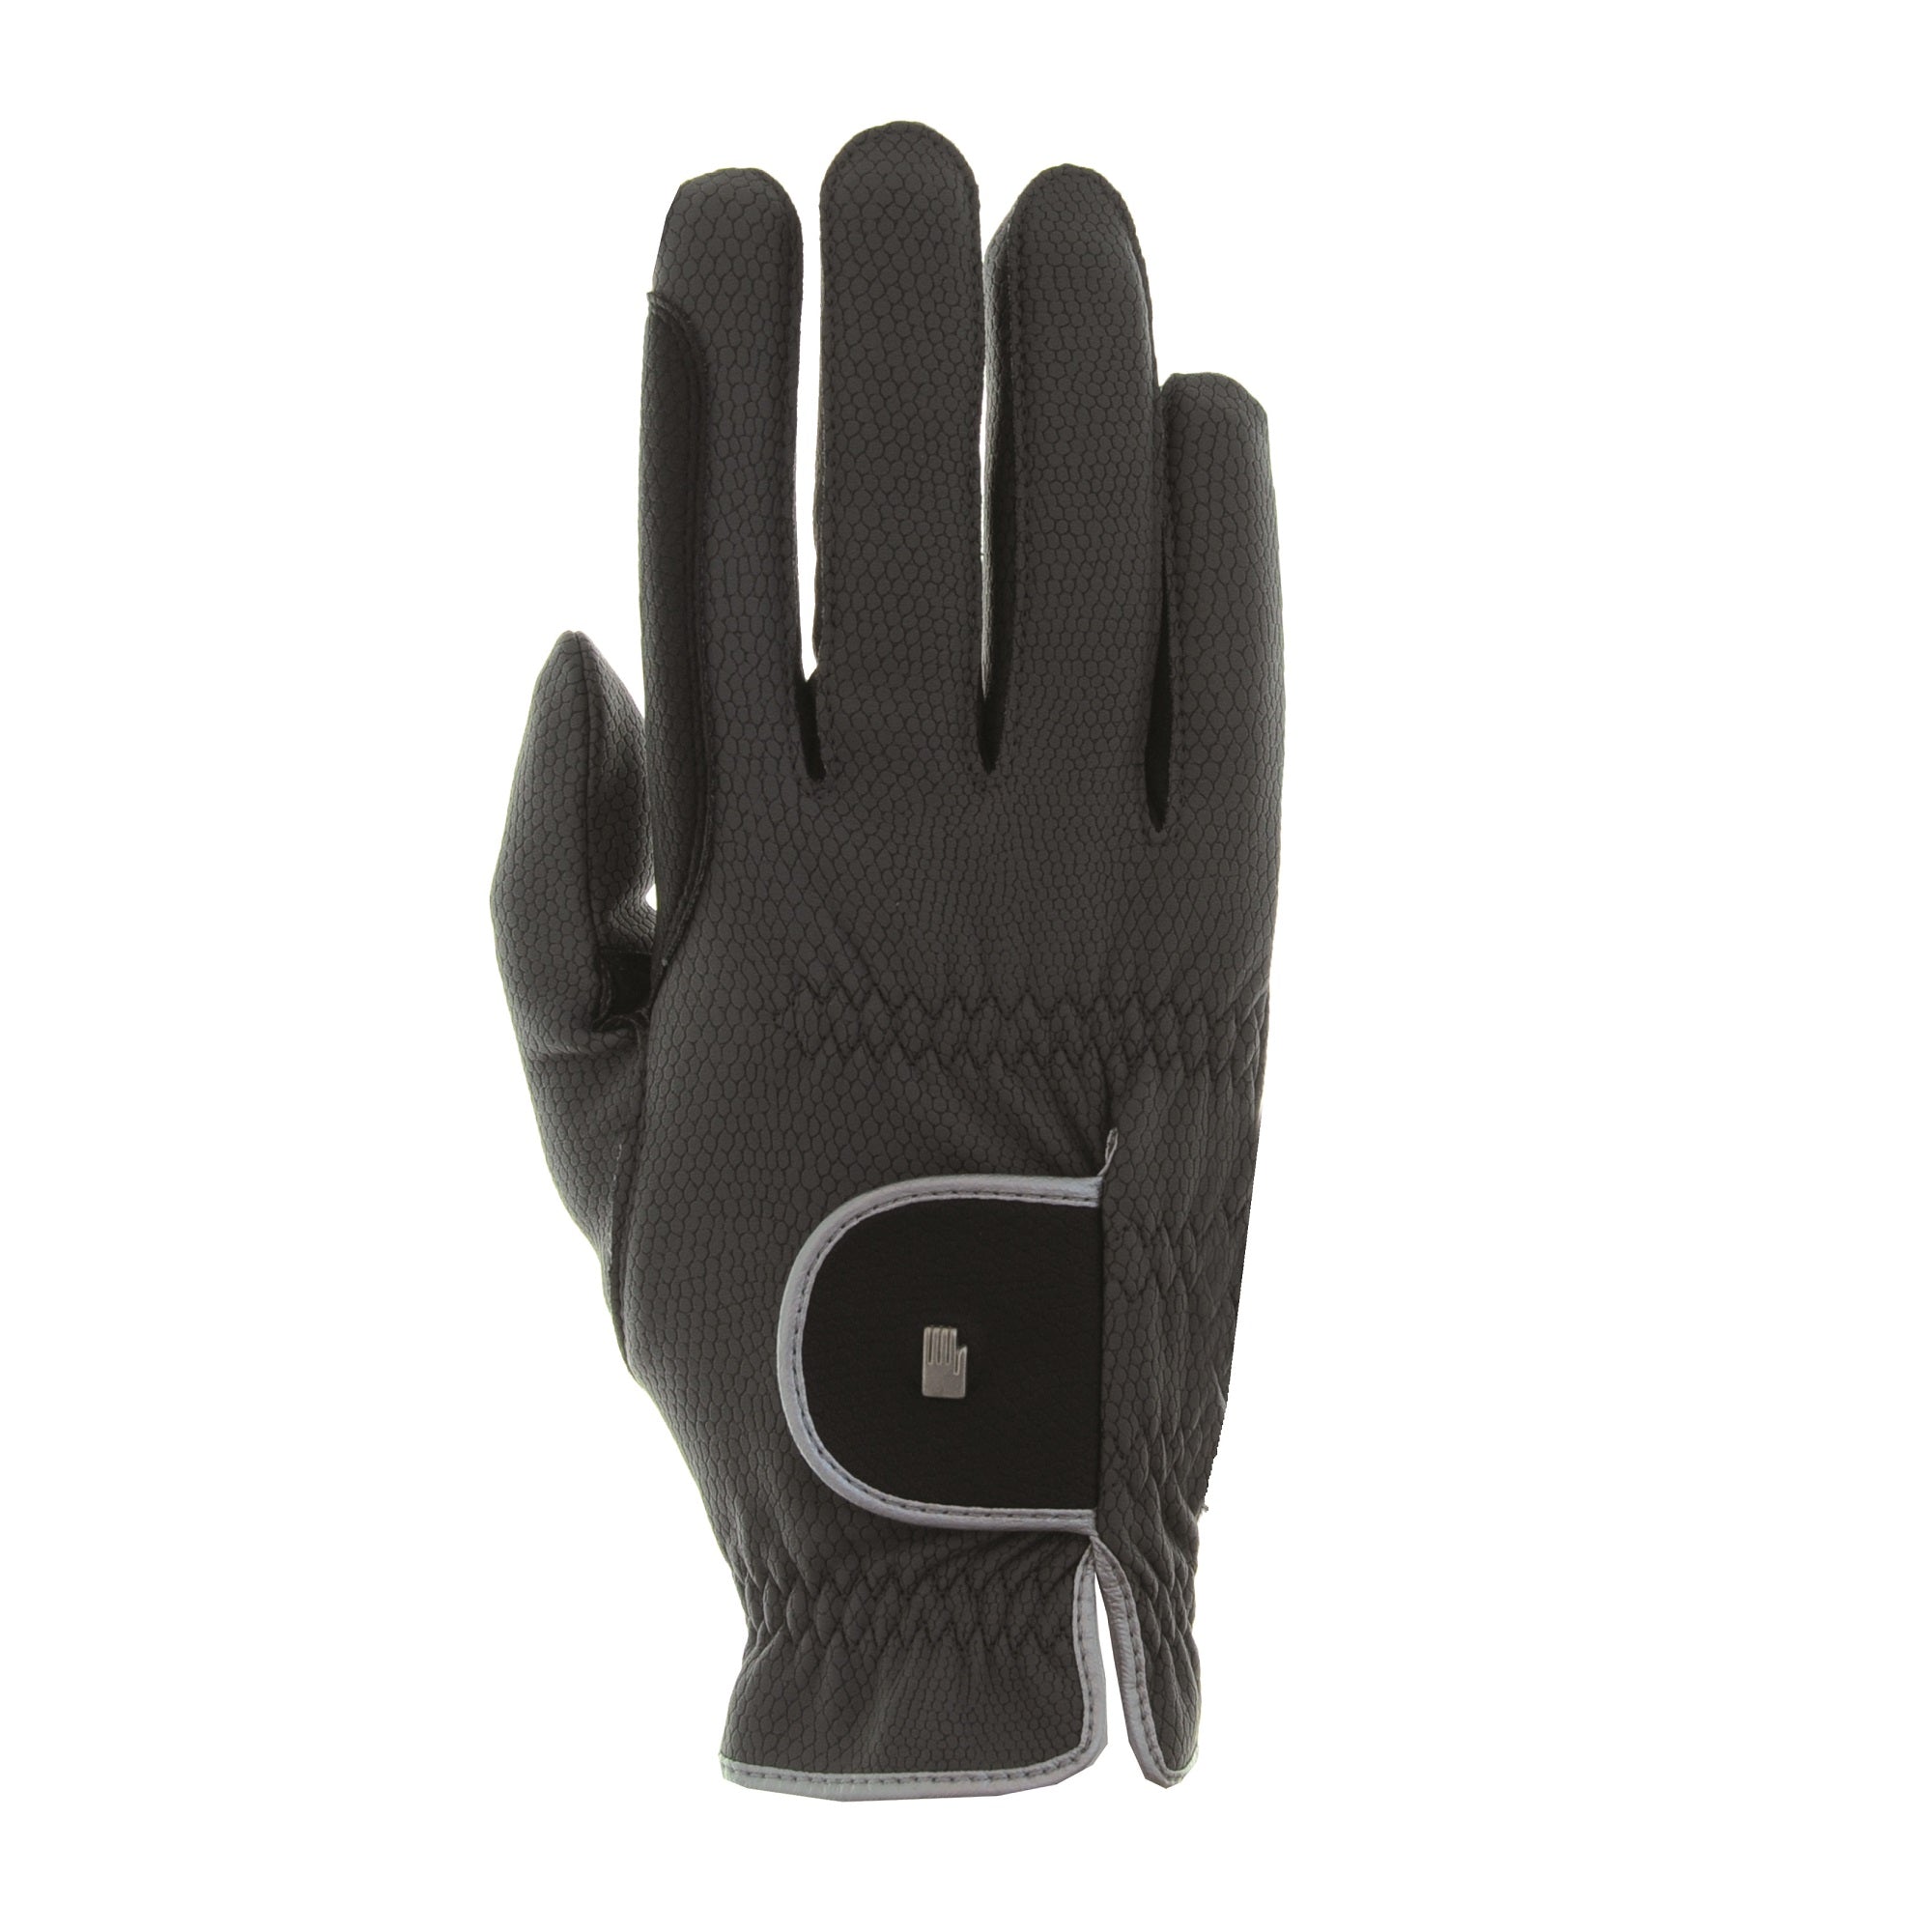 Roeckl Malta Winter Glove - Anthracite/Silver